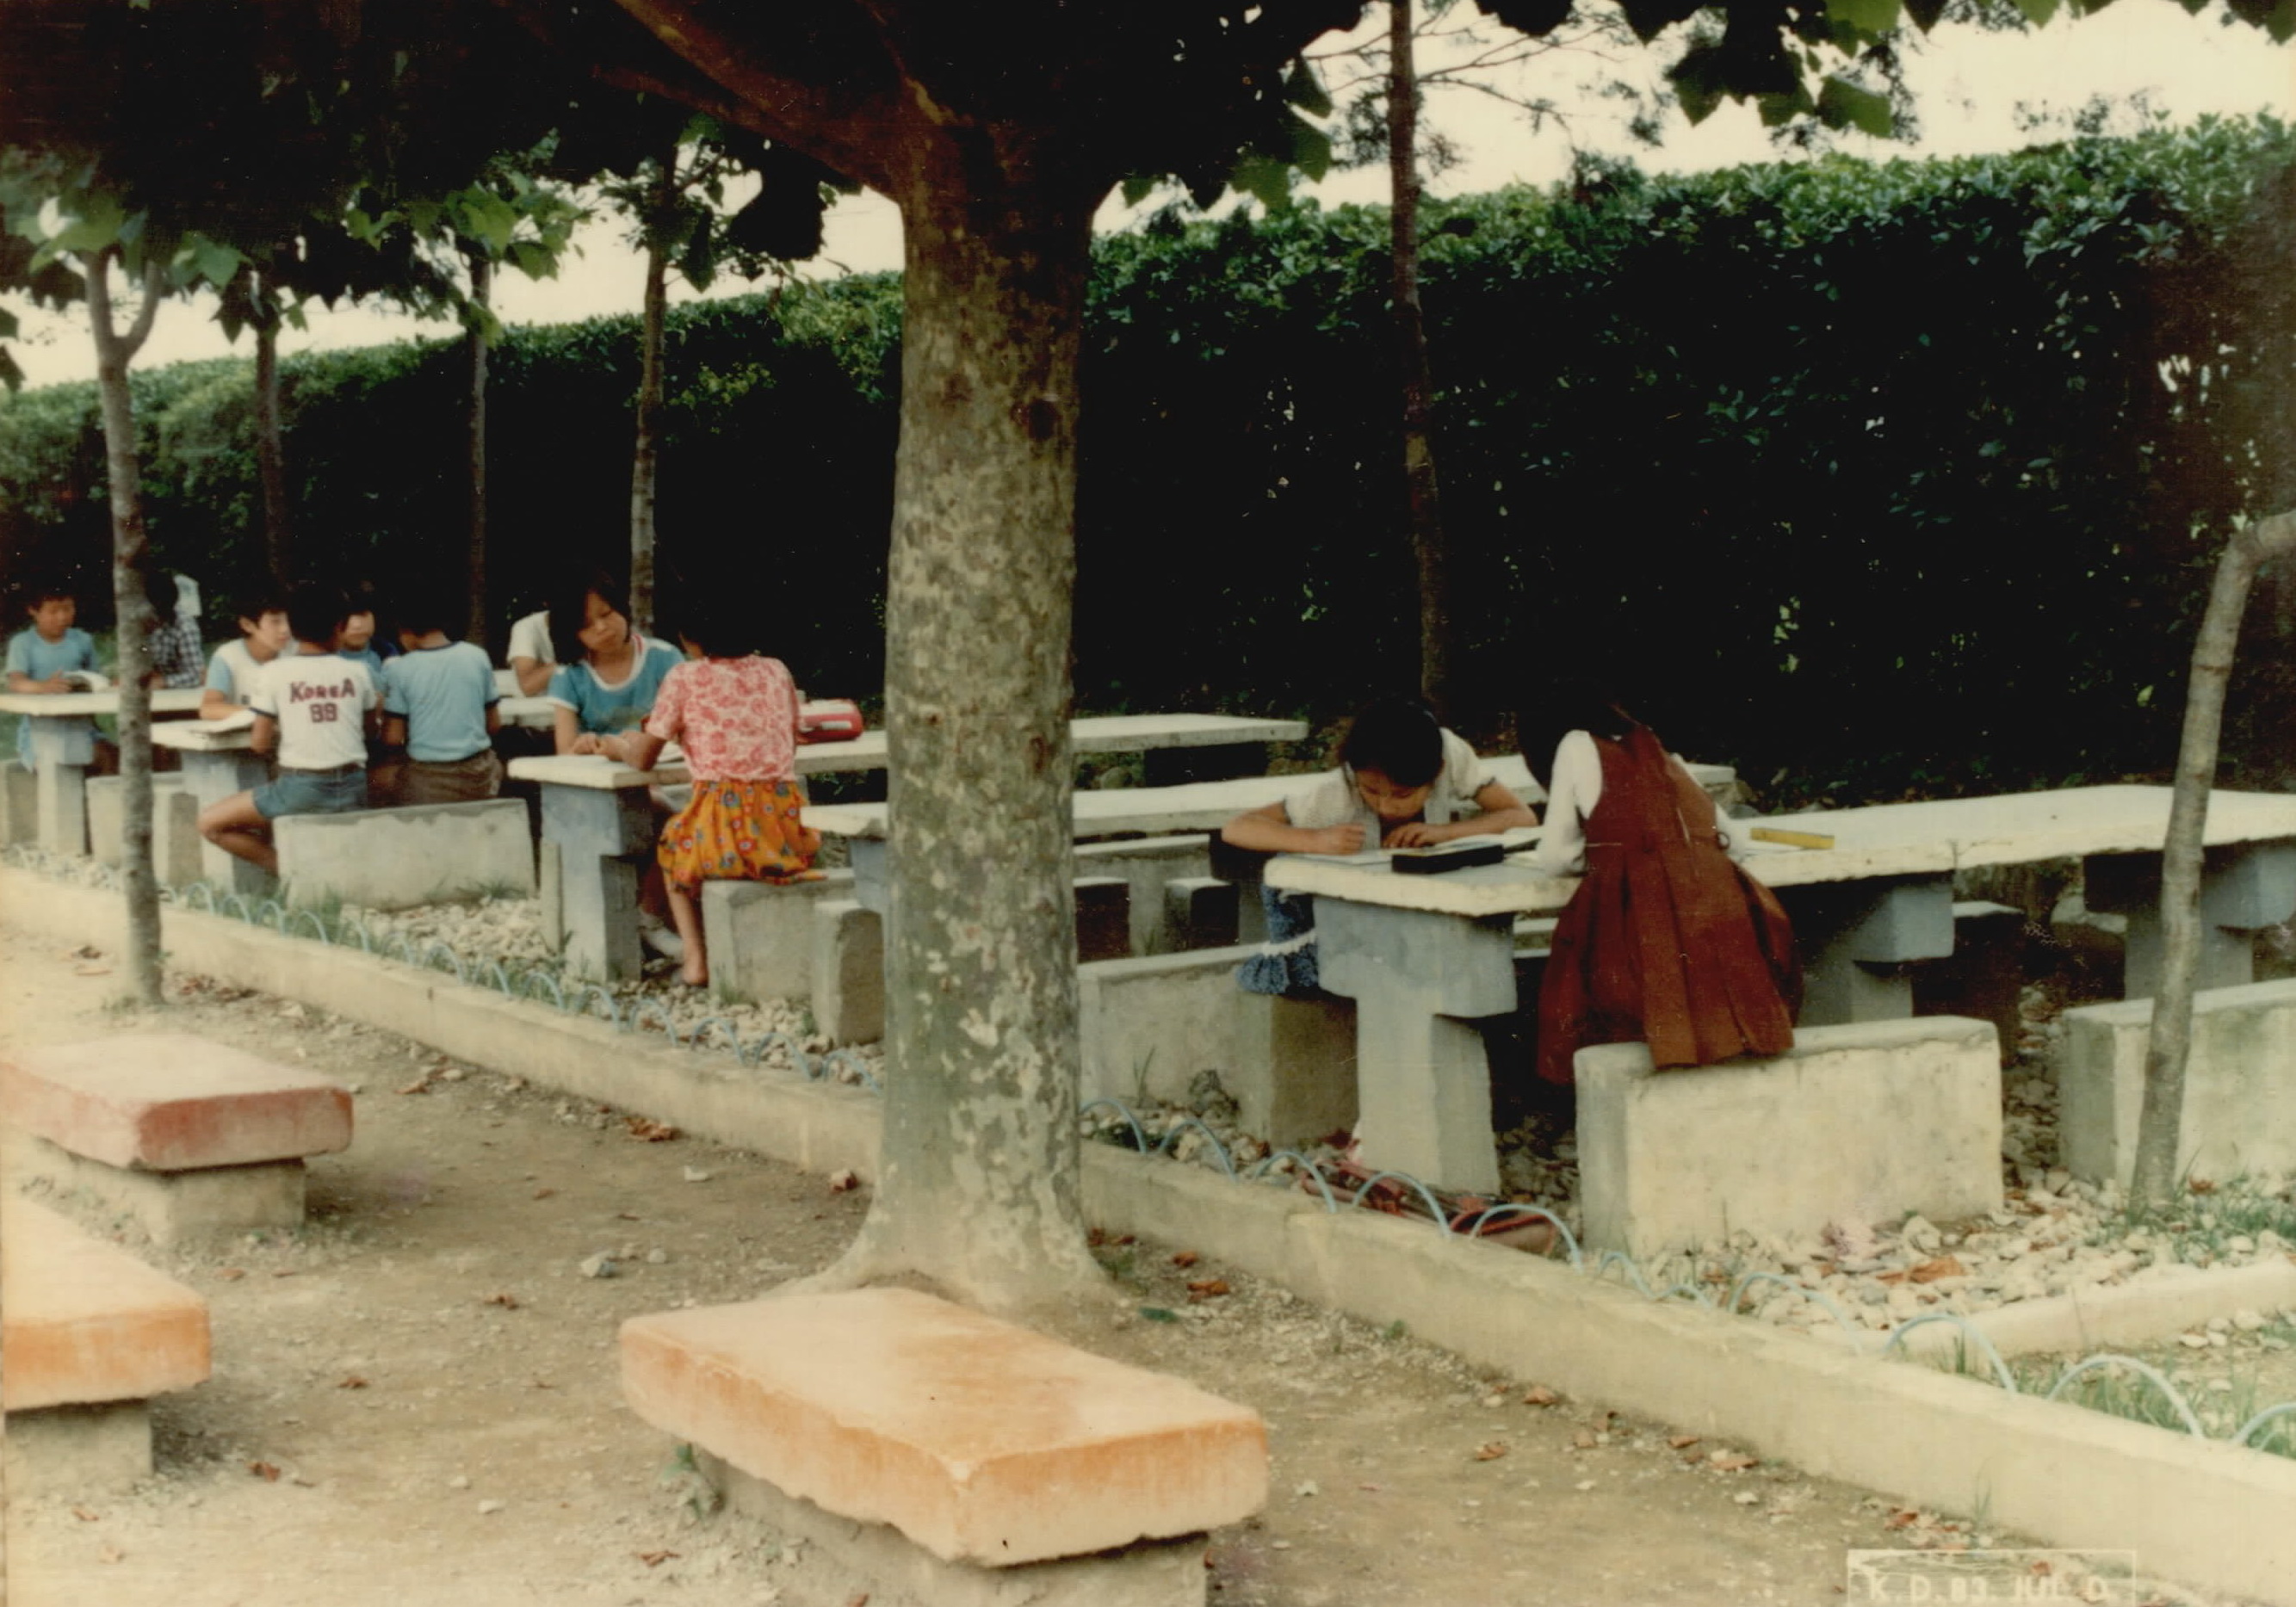 
															
															
																
																	옥봉초등학교 야외학습장 - 1983년 [1번째 이미지]
																
																
															
														